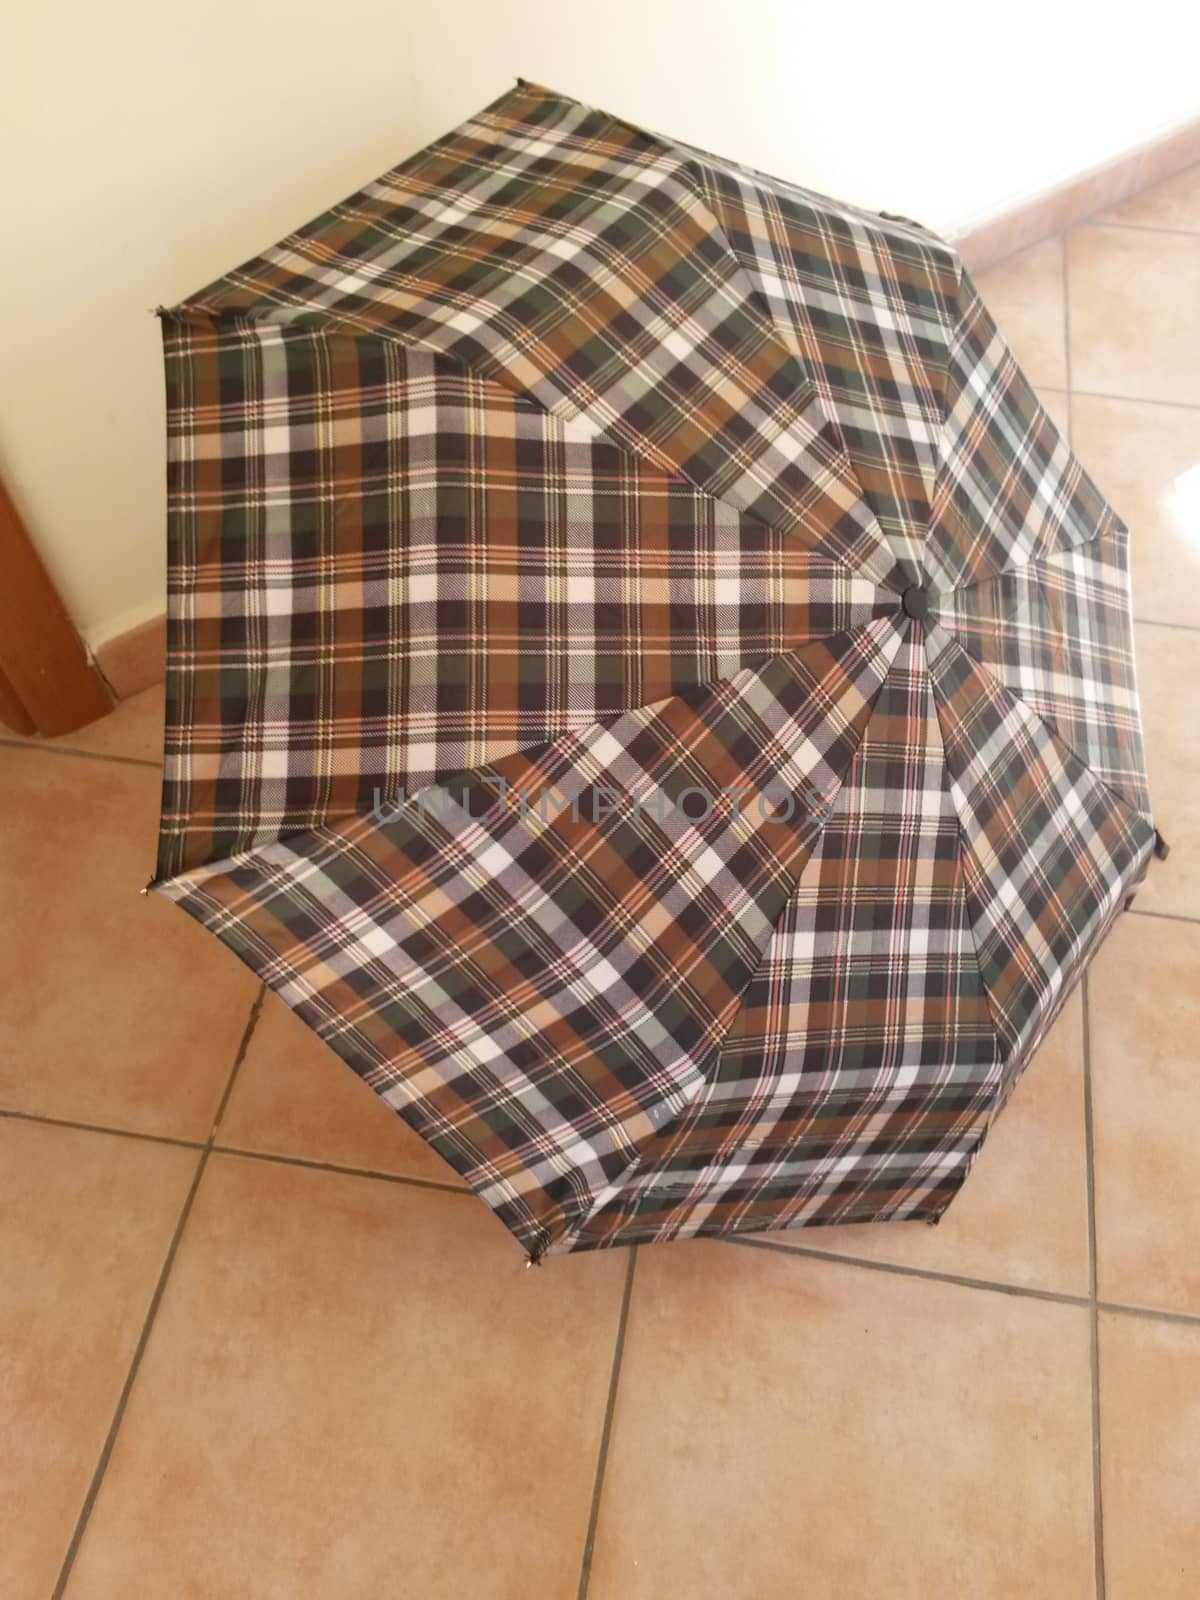 Tartan umbrella open over red brick floor tiles